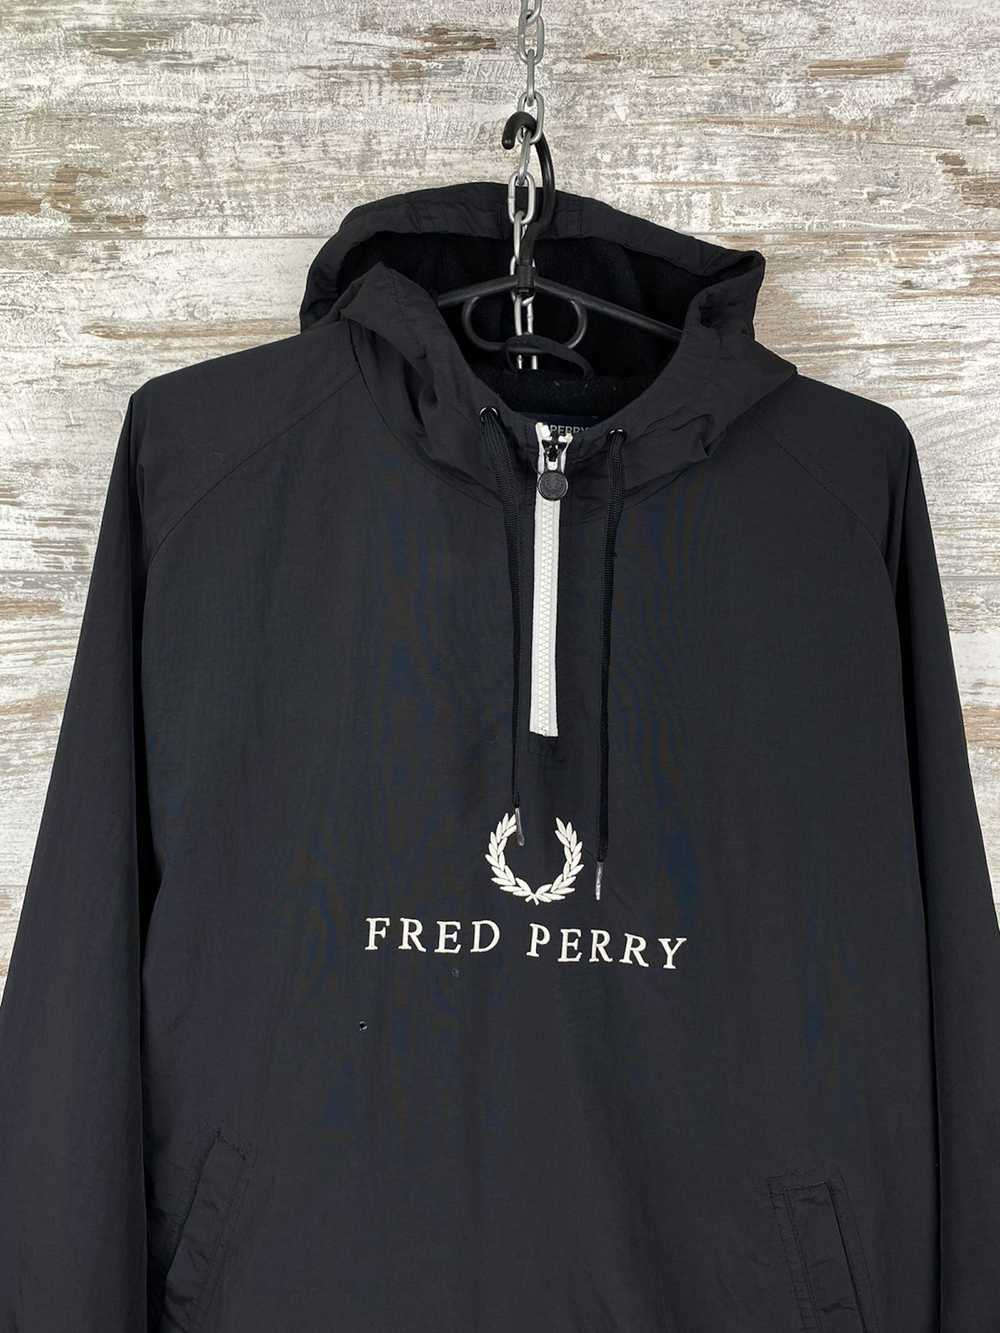 Fred Perry × Streetwear × Vintage Mens Vintage Fr… - image 2